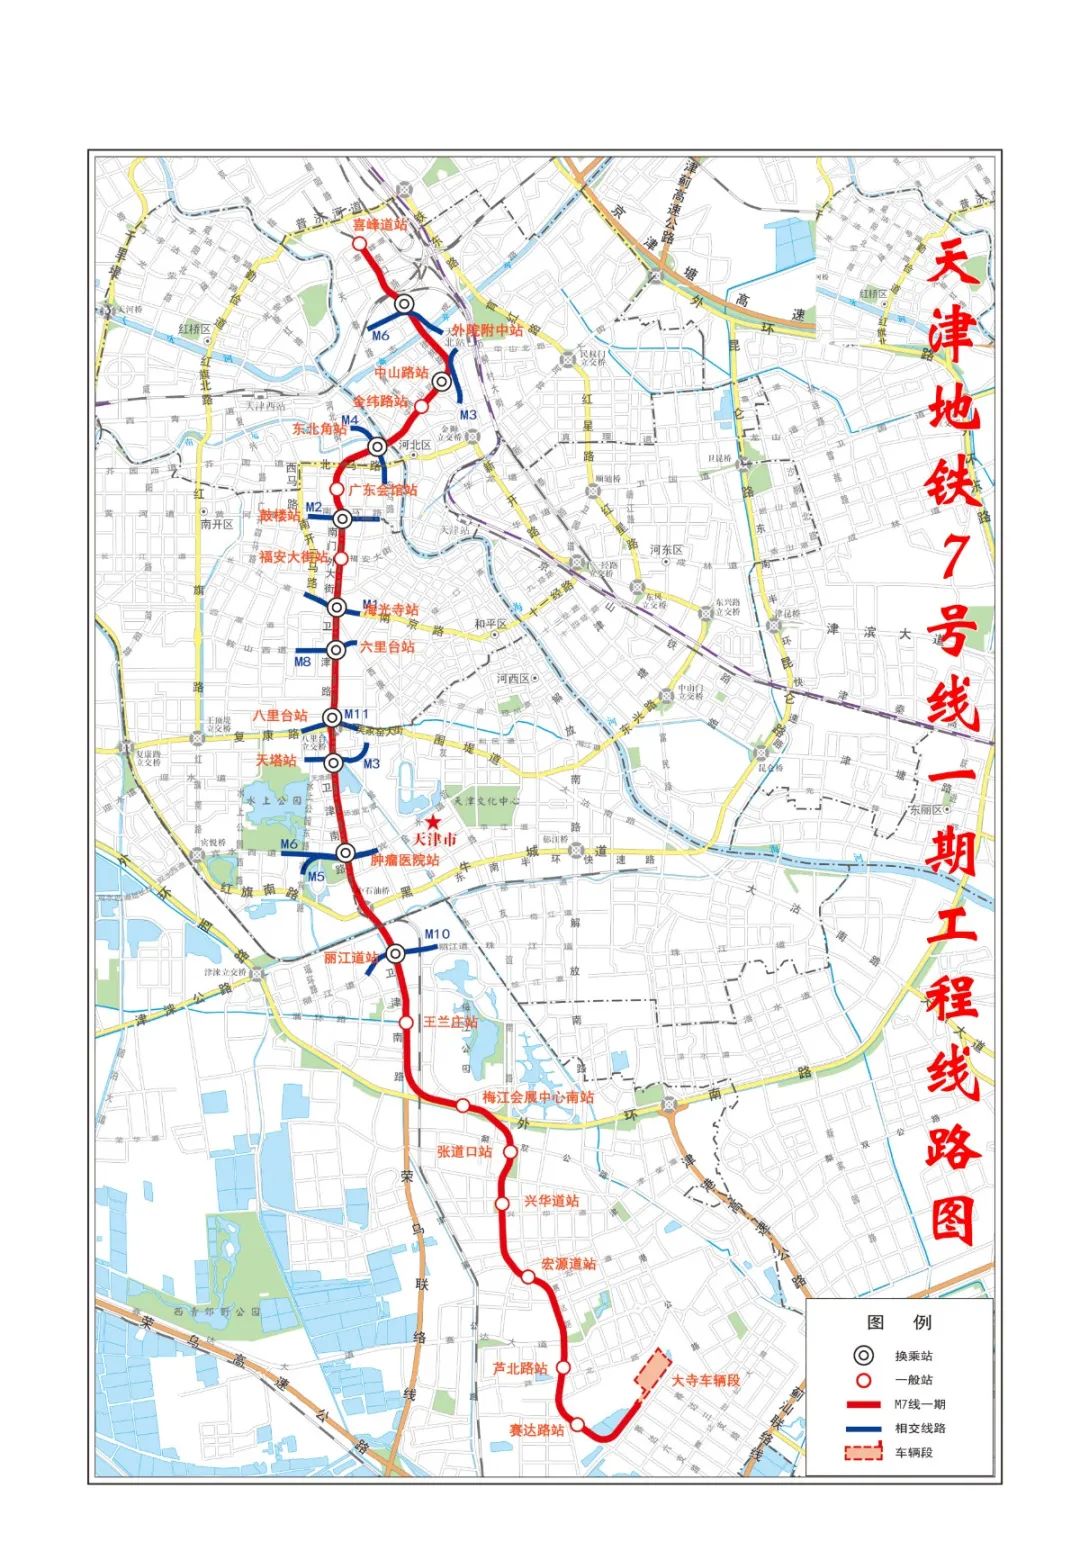 天津宁河区地铁图片